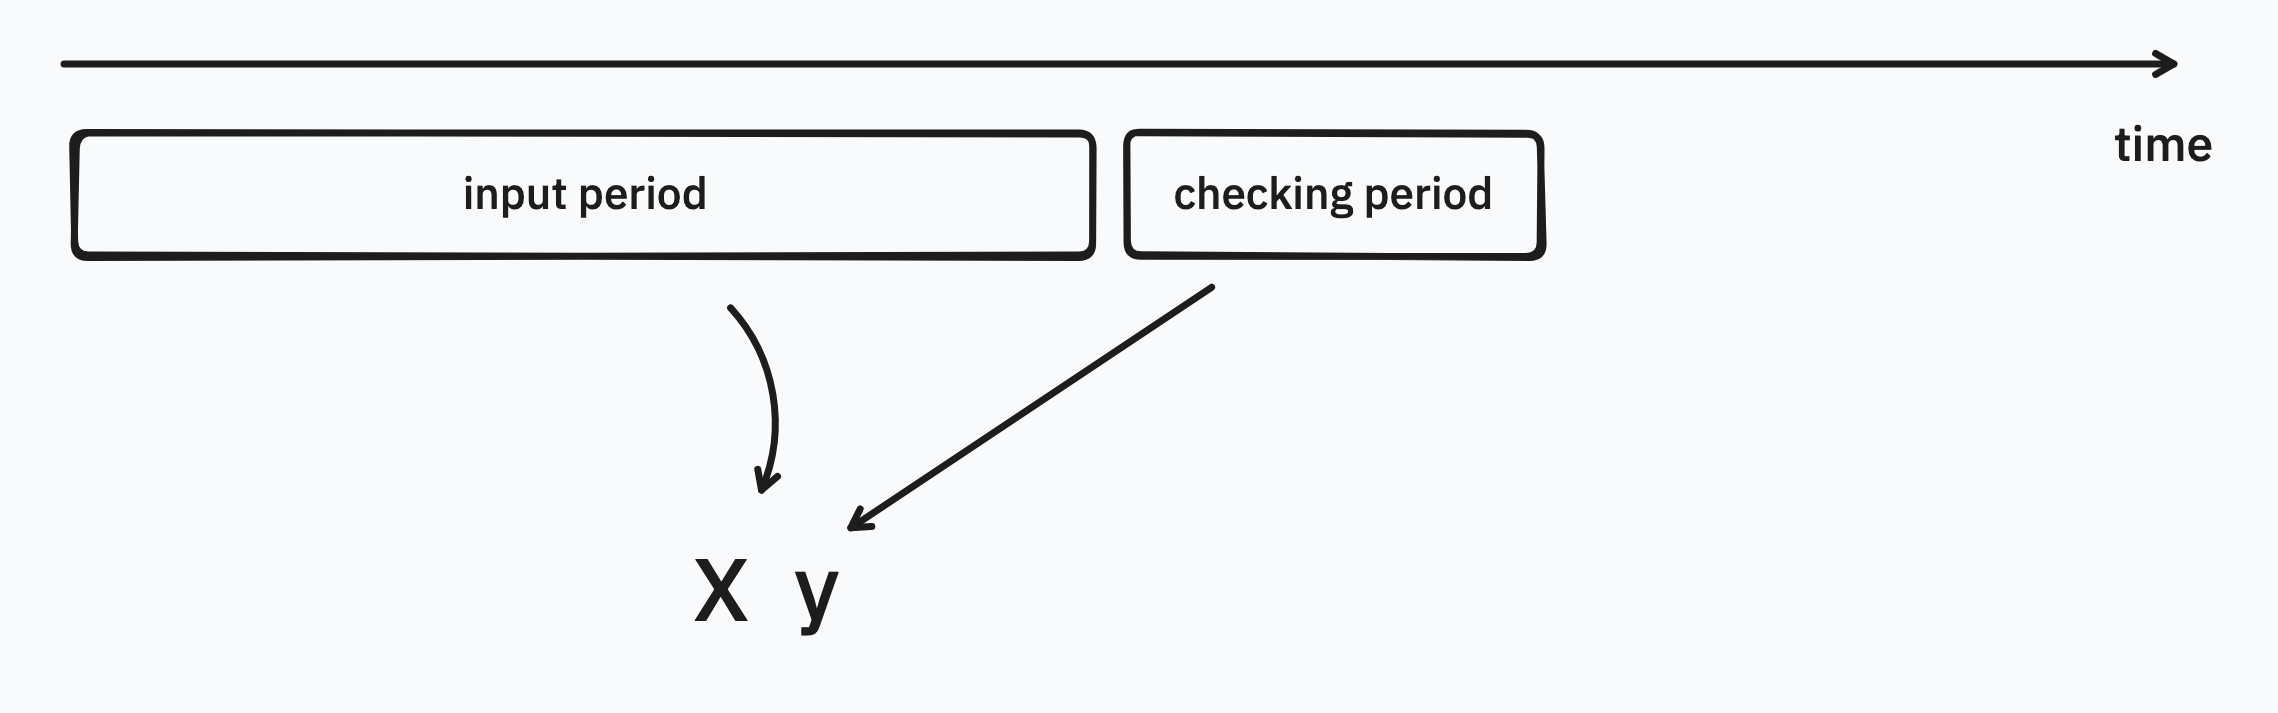 imgs/diagram1.png